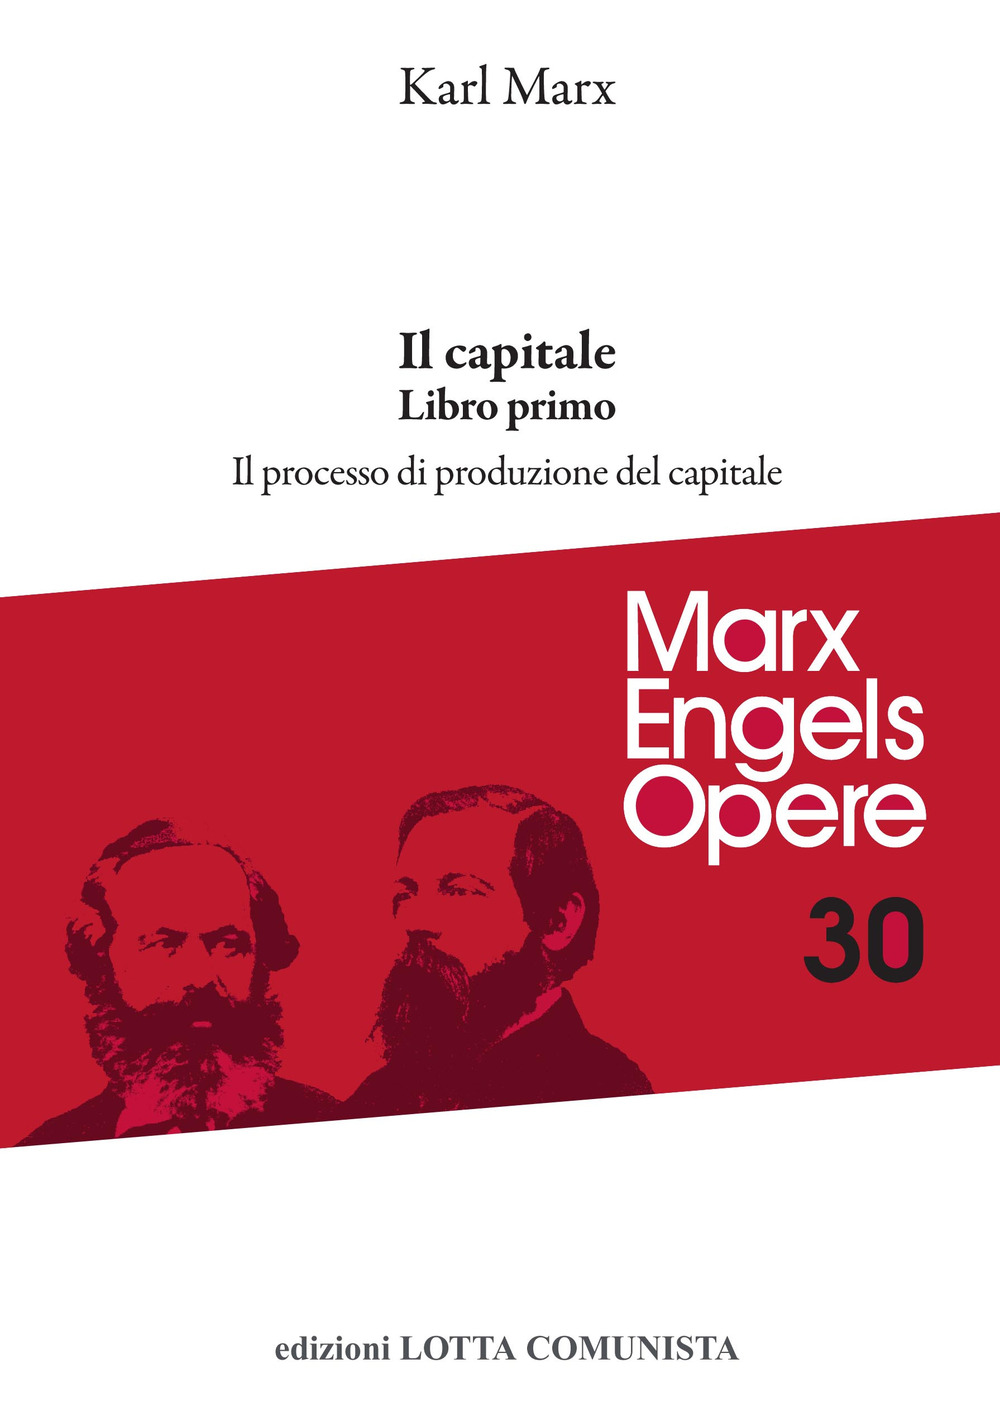 Libri Karl Marx - Opere Complete Vol 30 NUOVO SIGILLATO, EDIZIONE DEL 26/04/2022 SUBITO DISPONIBILE